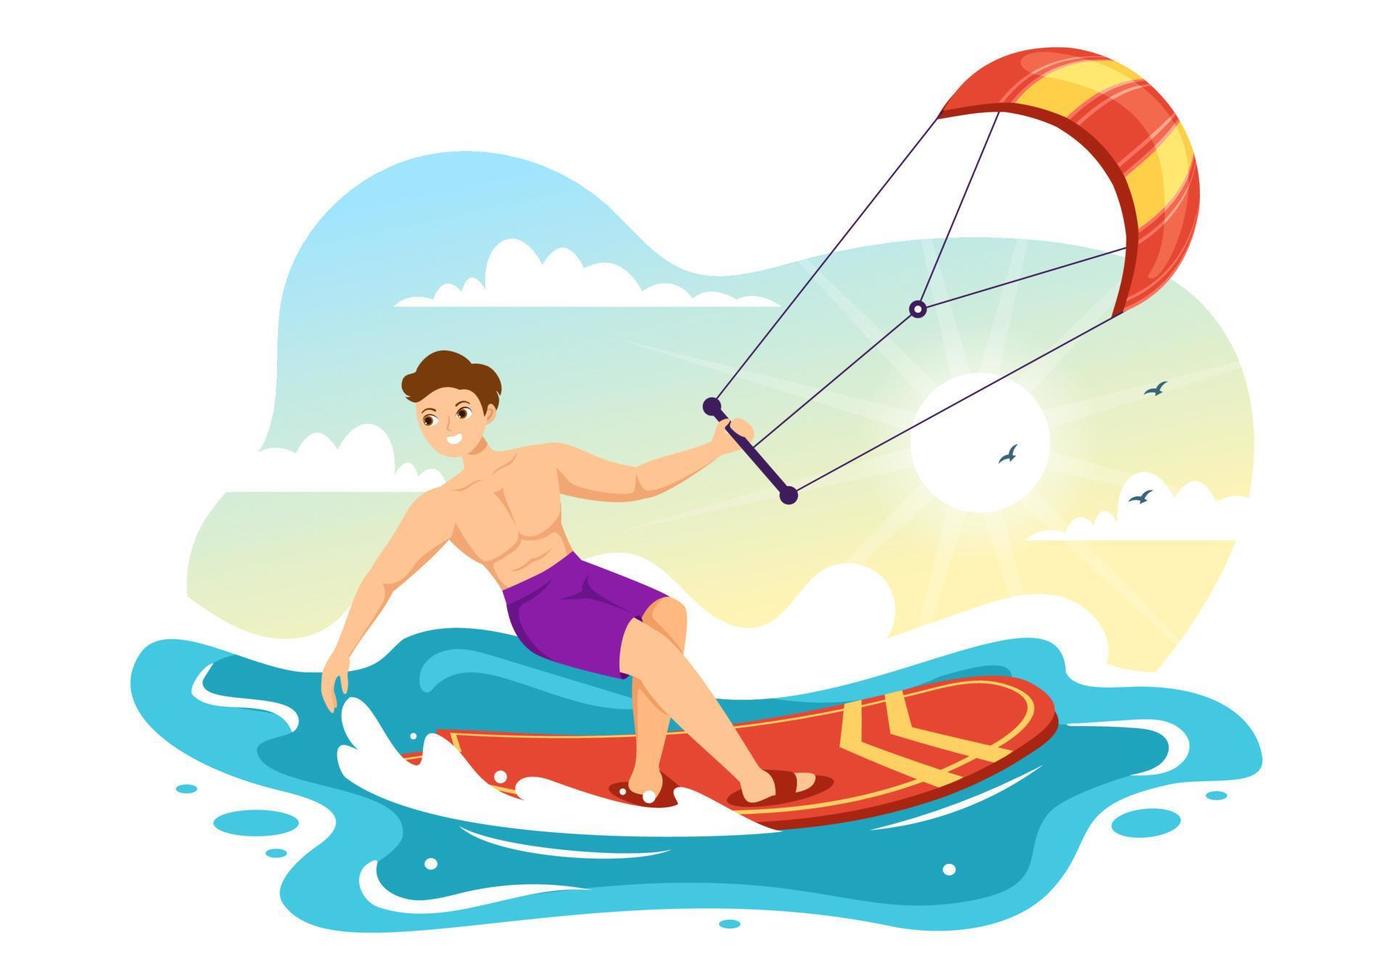 ilustração de kitesurf com kitesurfista em pé no kiteboard no mar de verão em esportes aquáticos extremos modelo desenhado à mão vetor